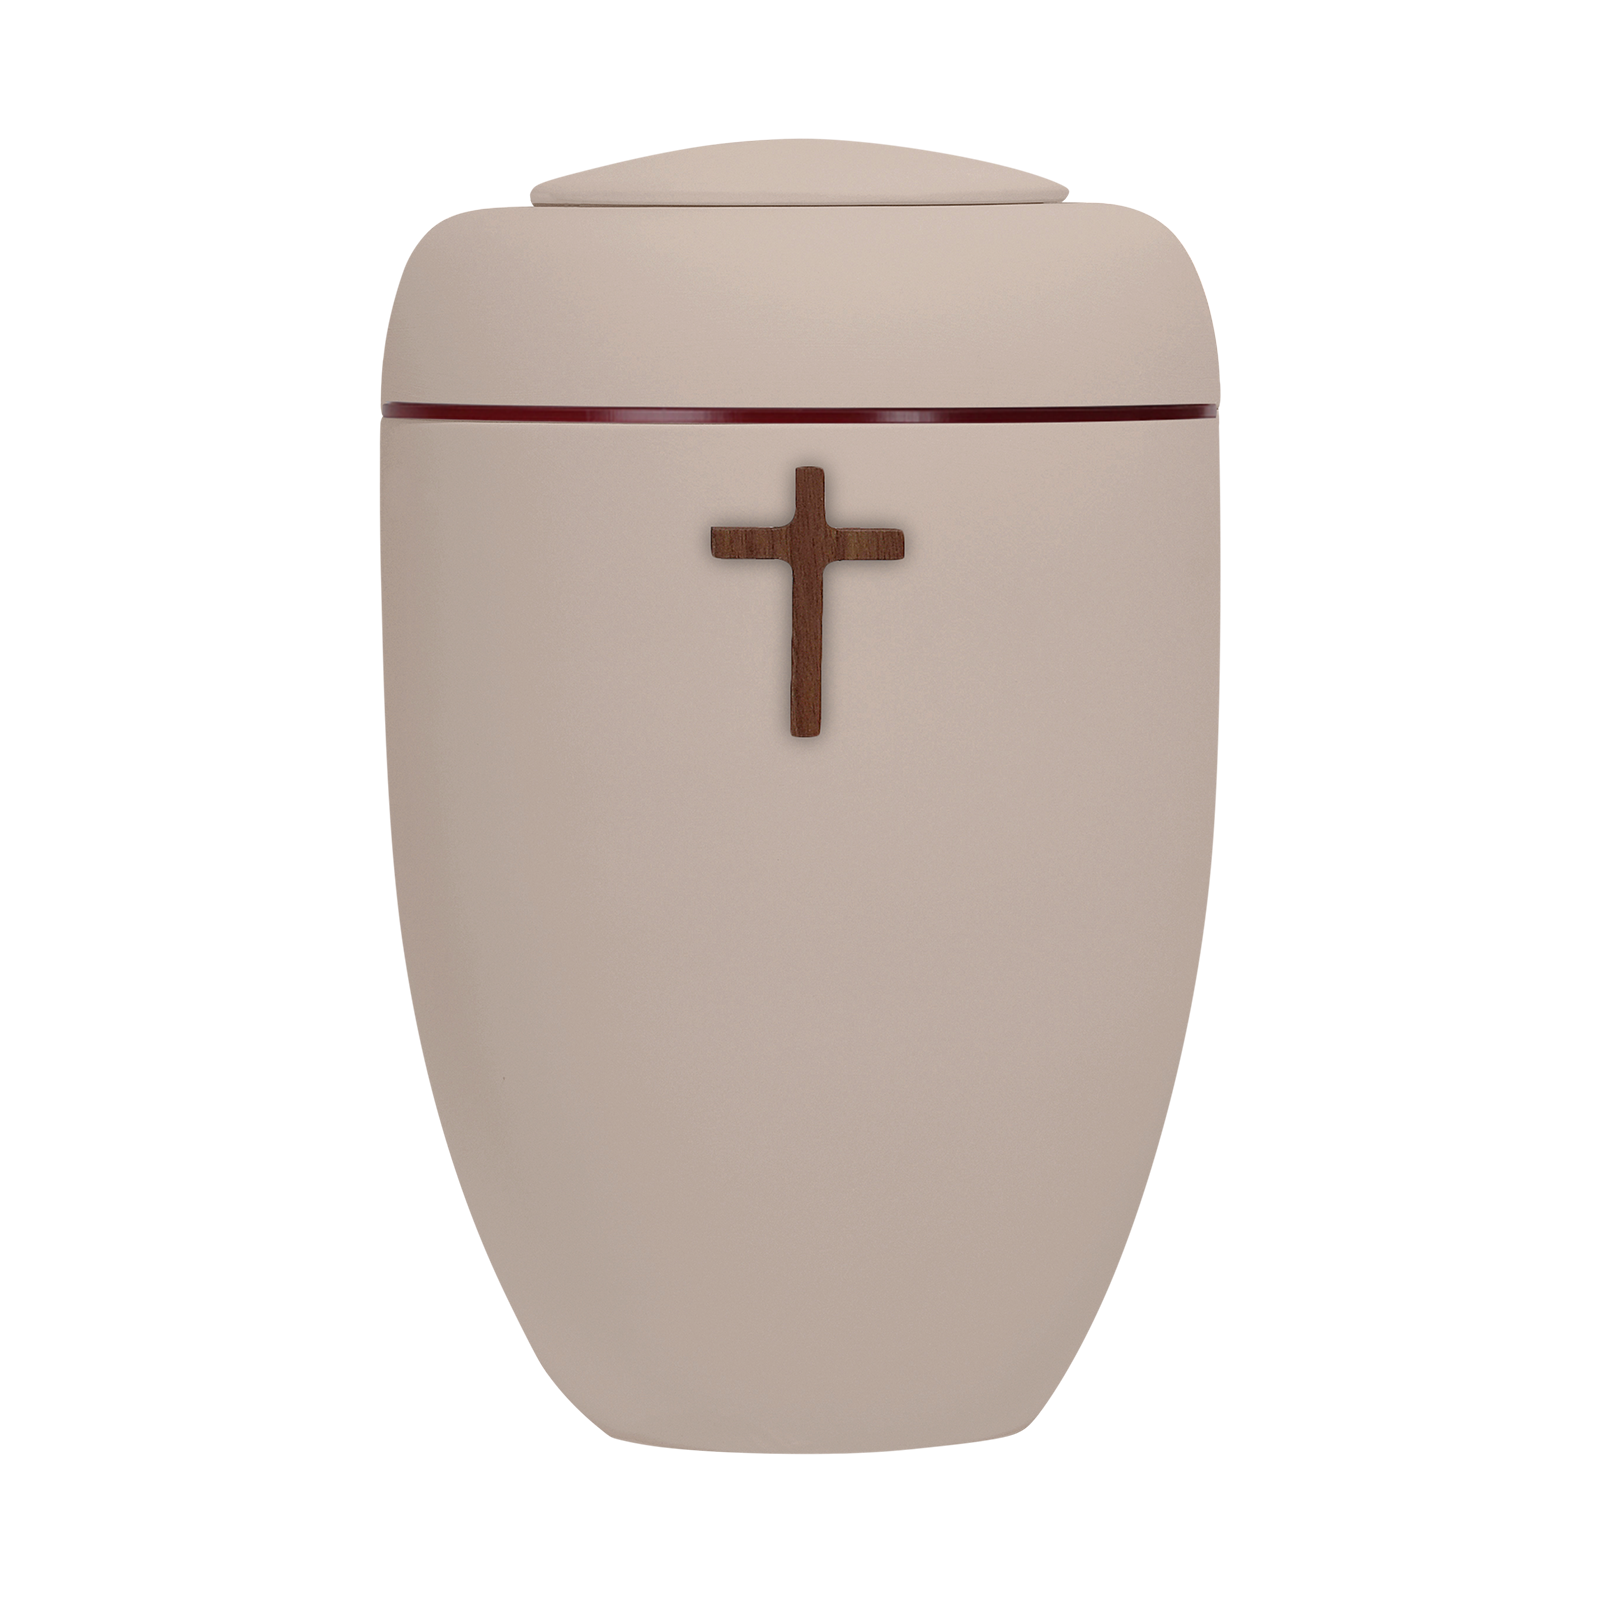 Oxidrote Symbol-Urne mit Holzkreuz und roter Plexiglasscheibe